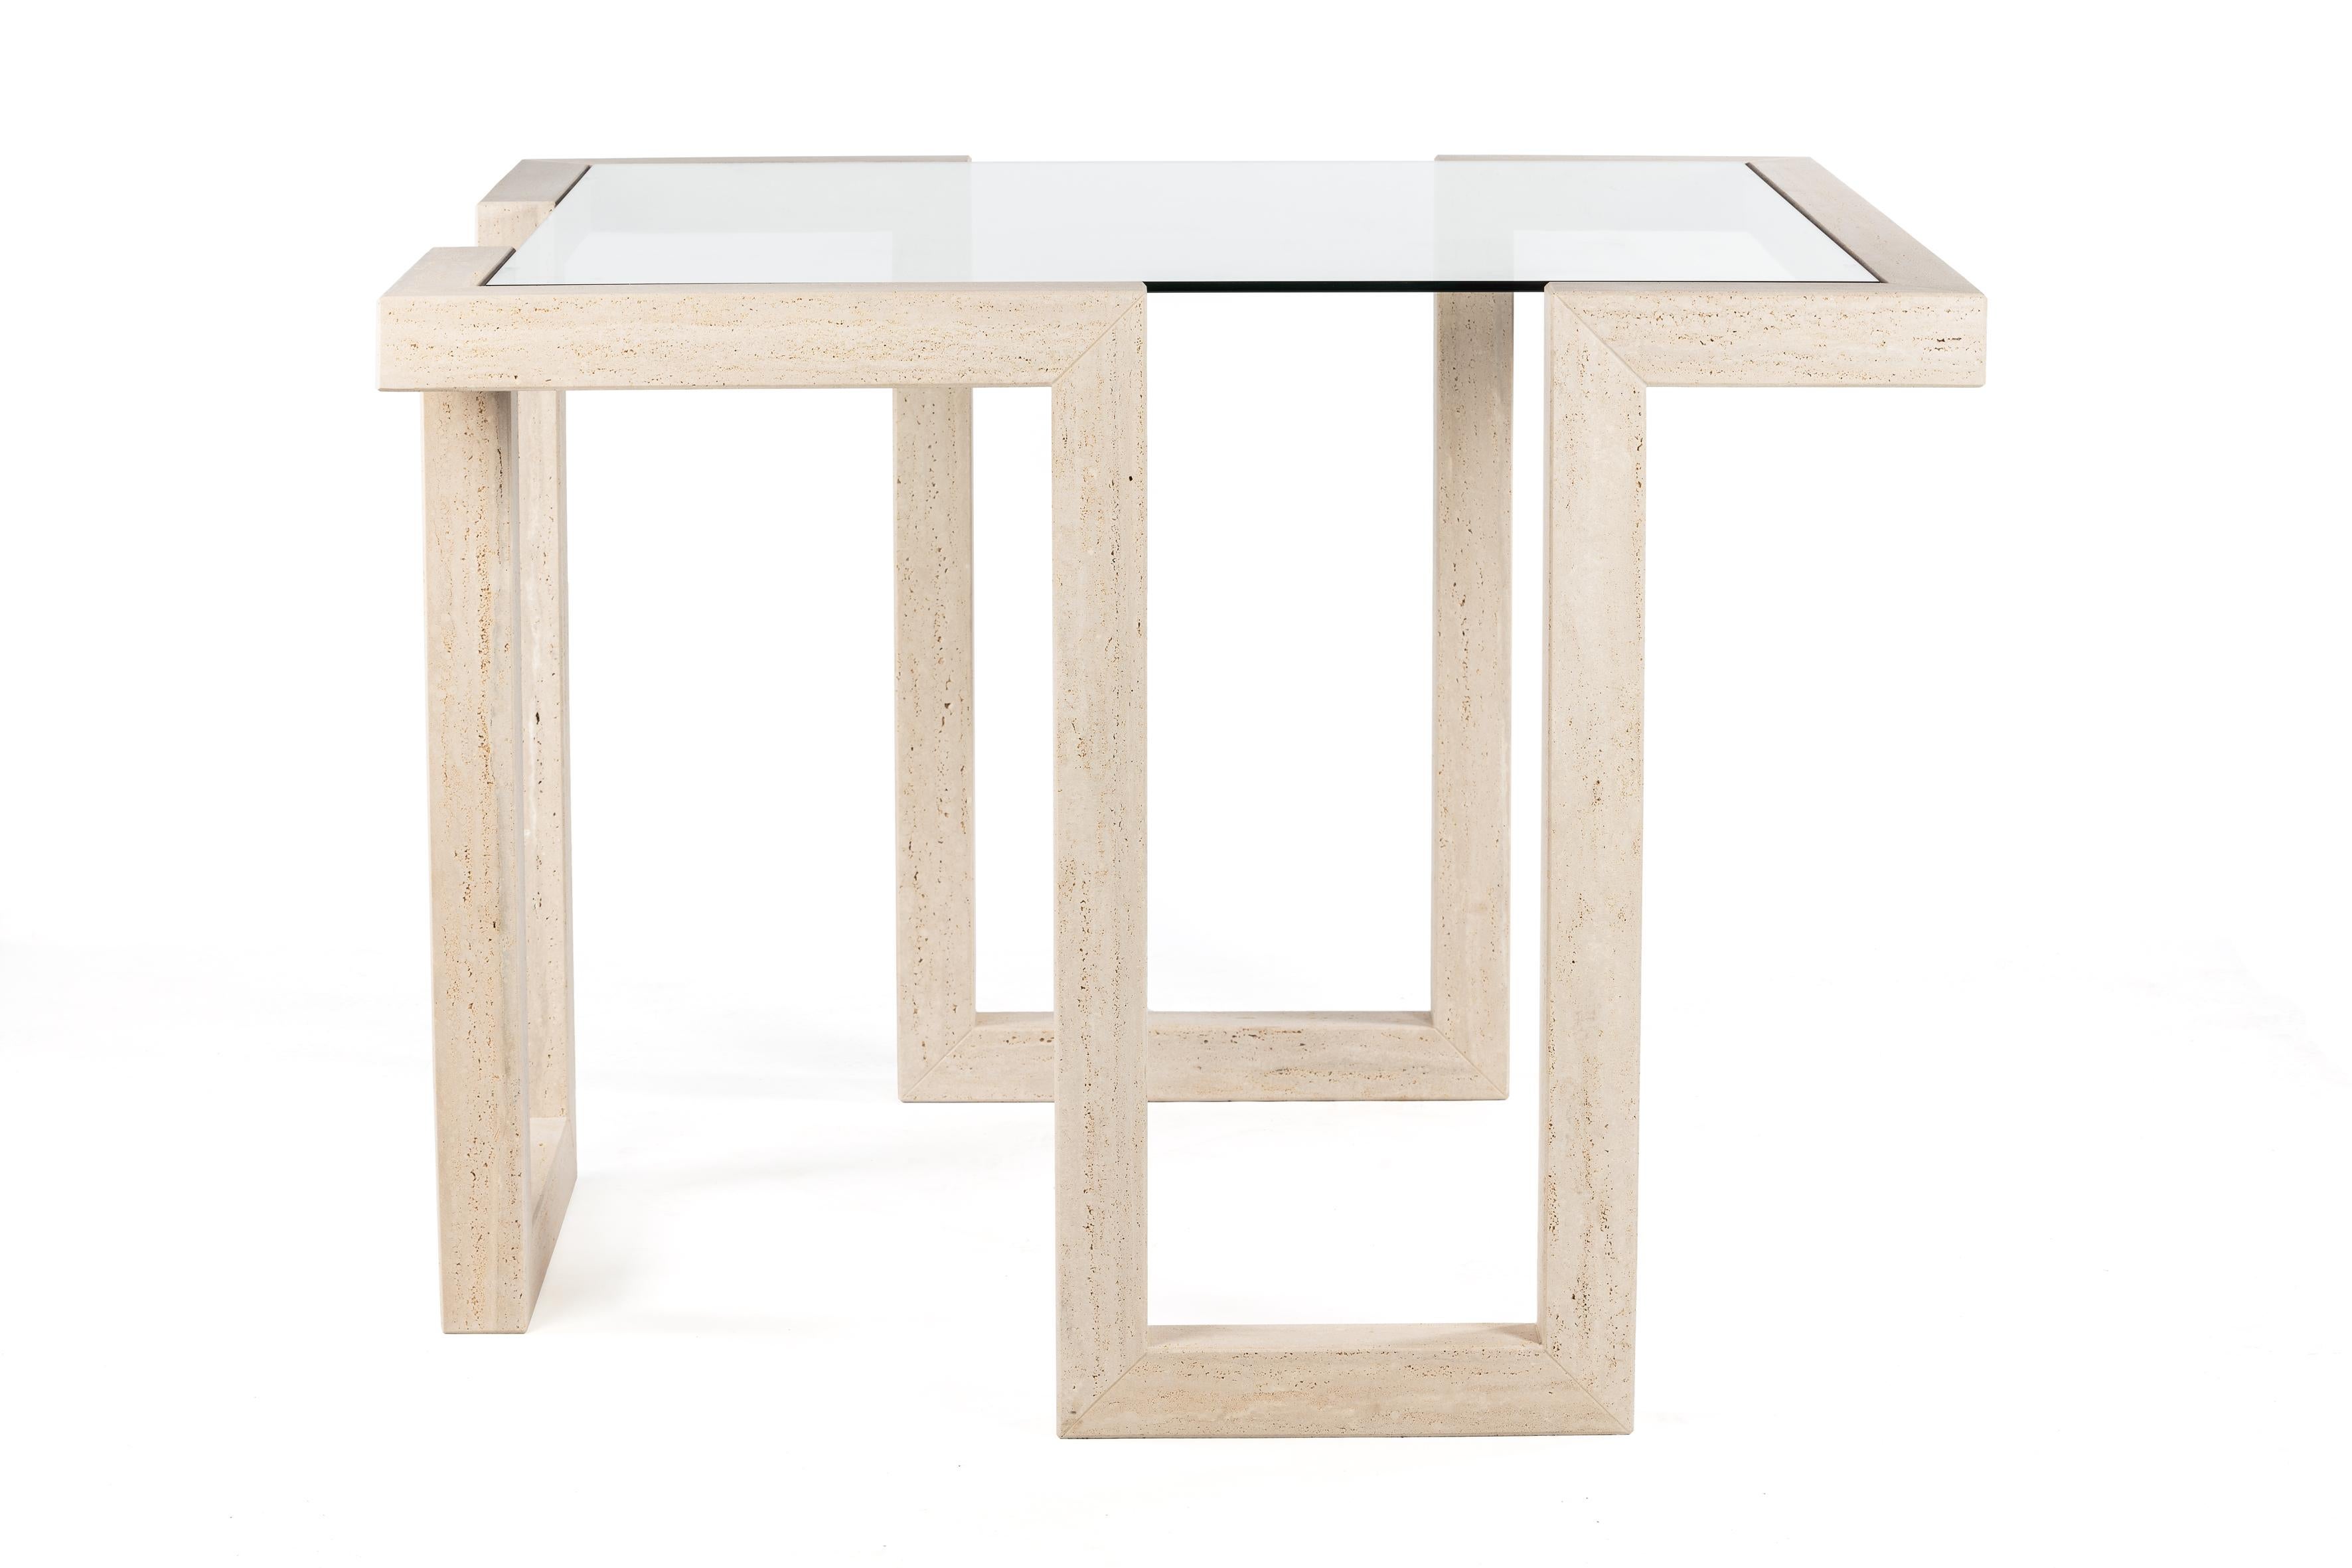 Castile est une table à manger en marbre travertin au design contemporain. Une table plus haute destinée à être un centre de réunion dynamique, soit dans un espace ouvert comme un hôtel ou un restaurant, soit dans un espace privé comme un centre de